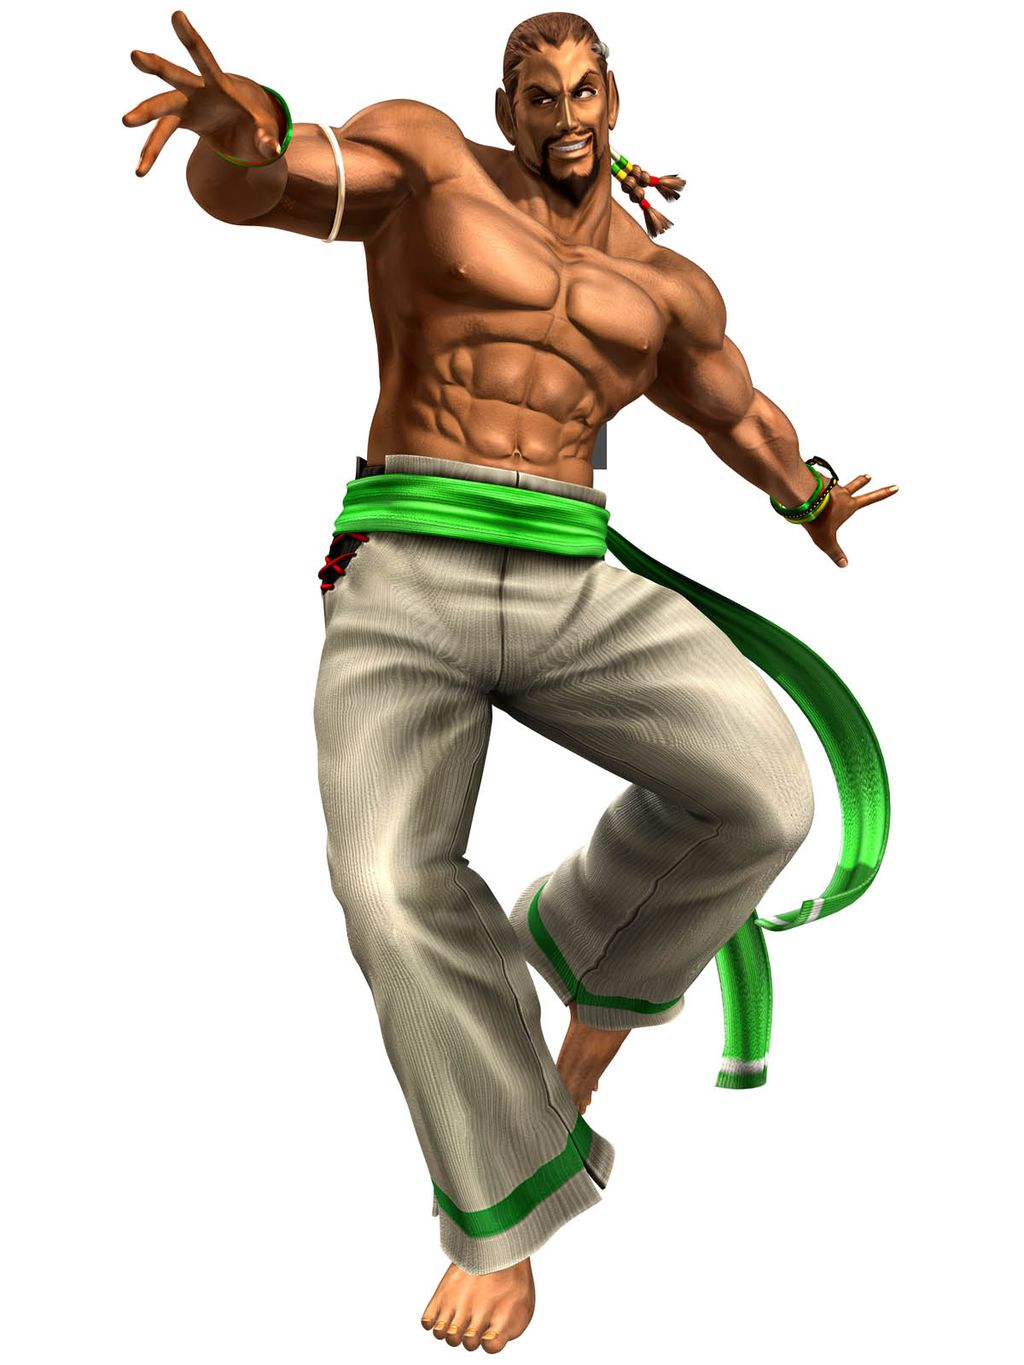 Personagem - Eddy Gordo, o capoeirista brasileiro de Tekken - Arkade